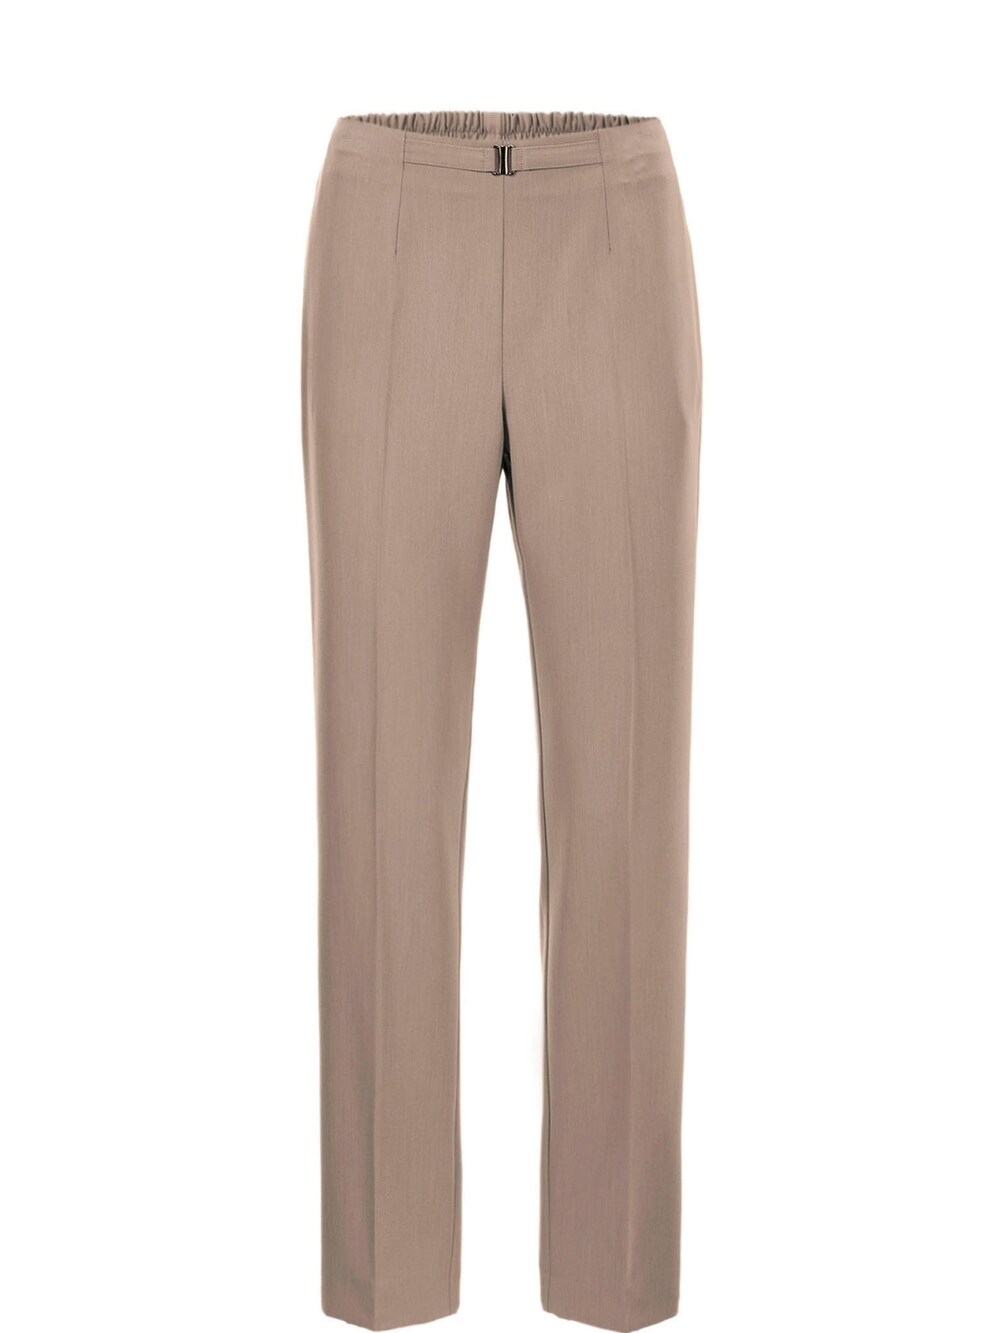 Обычные плиссированные брюки Goldner, коричневый обычные плиссированные брюки s oliver лазурный